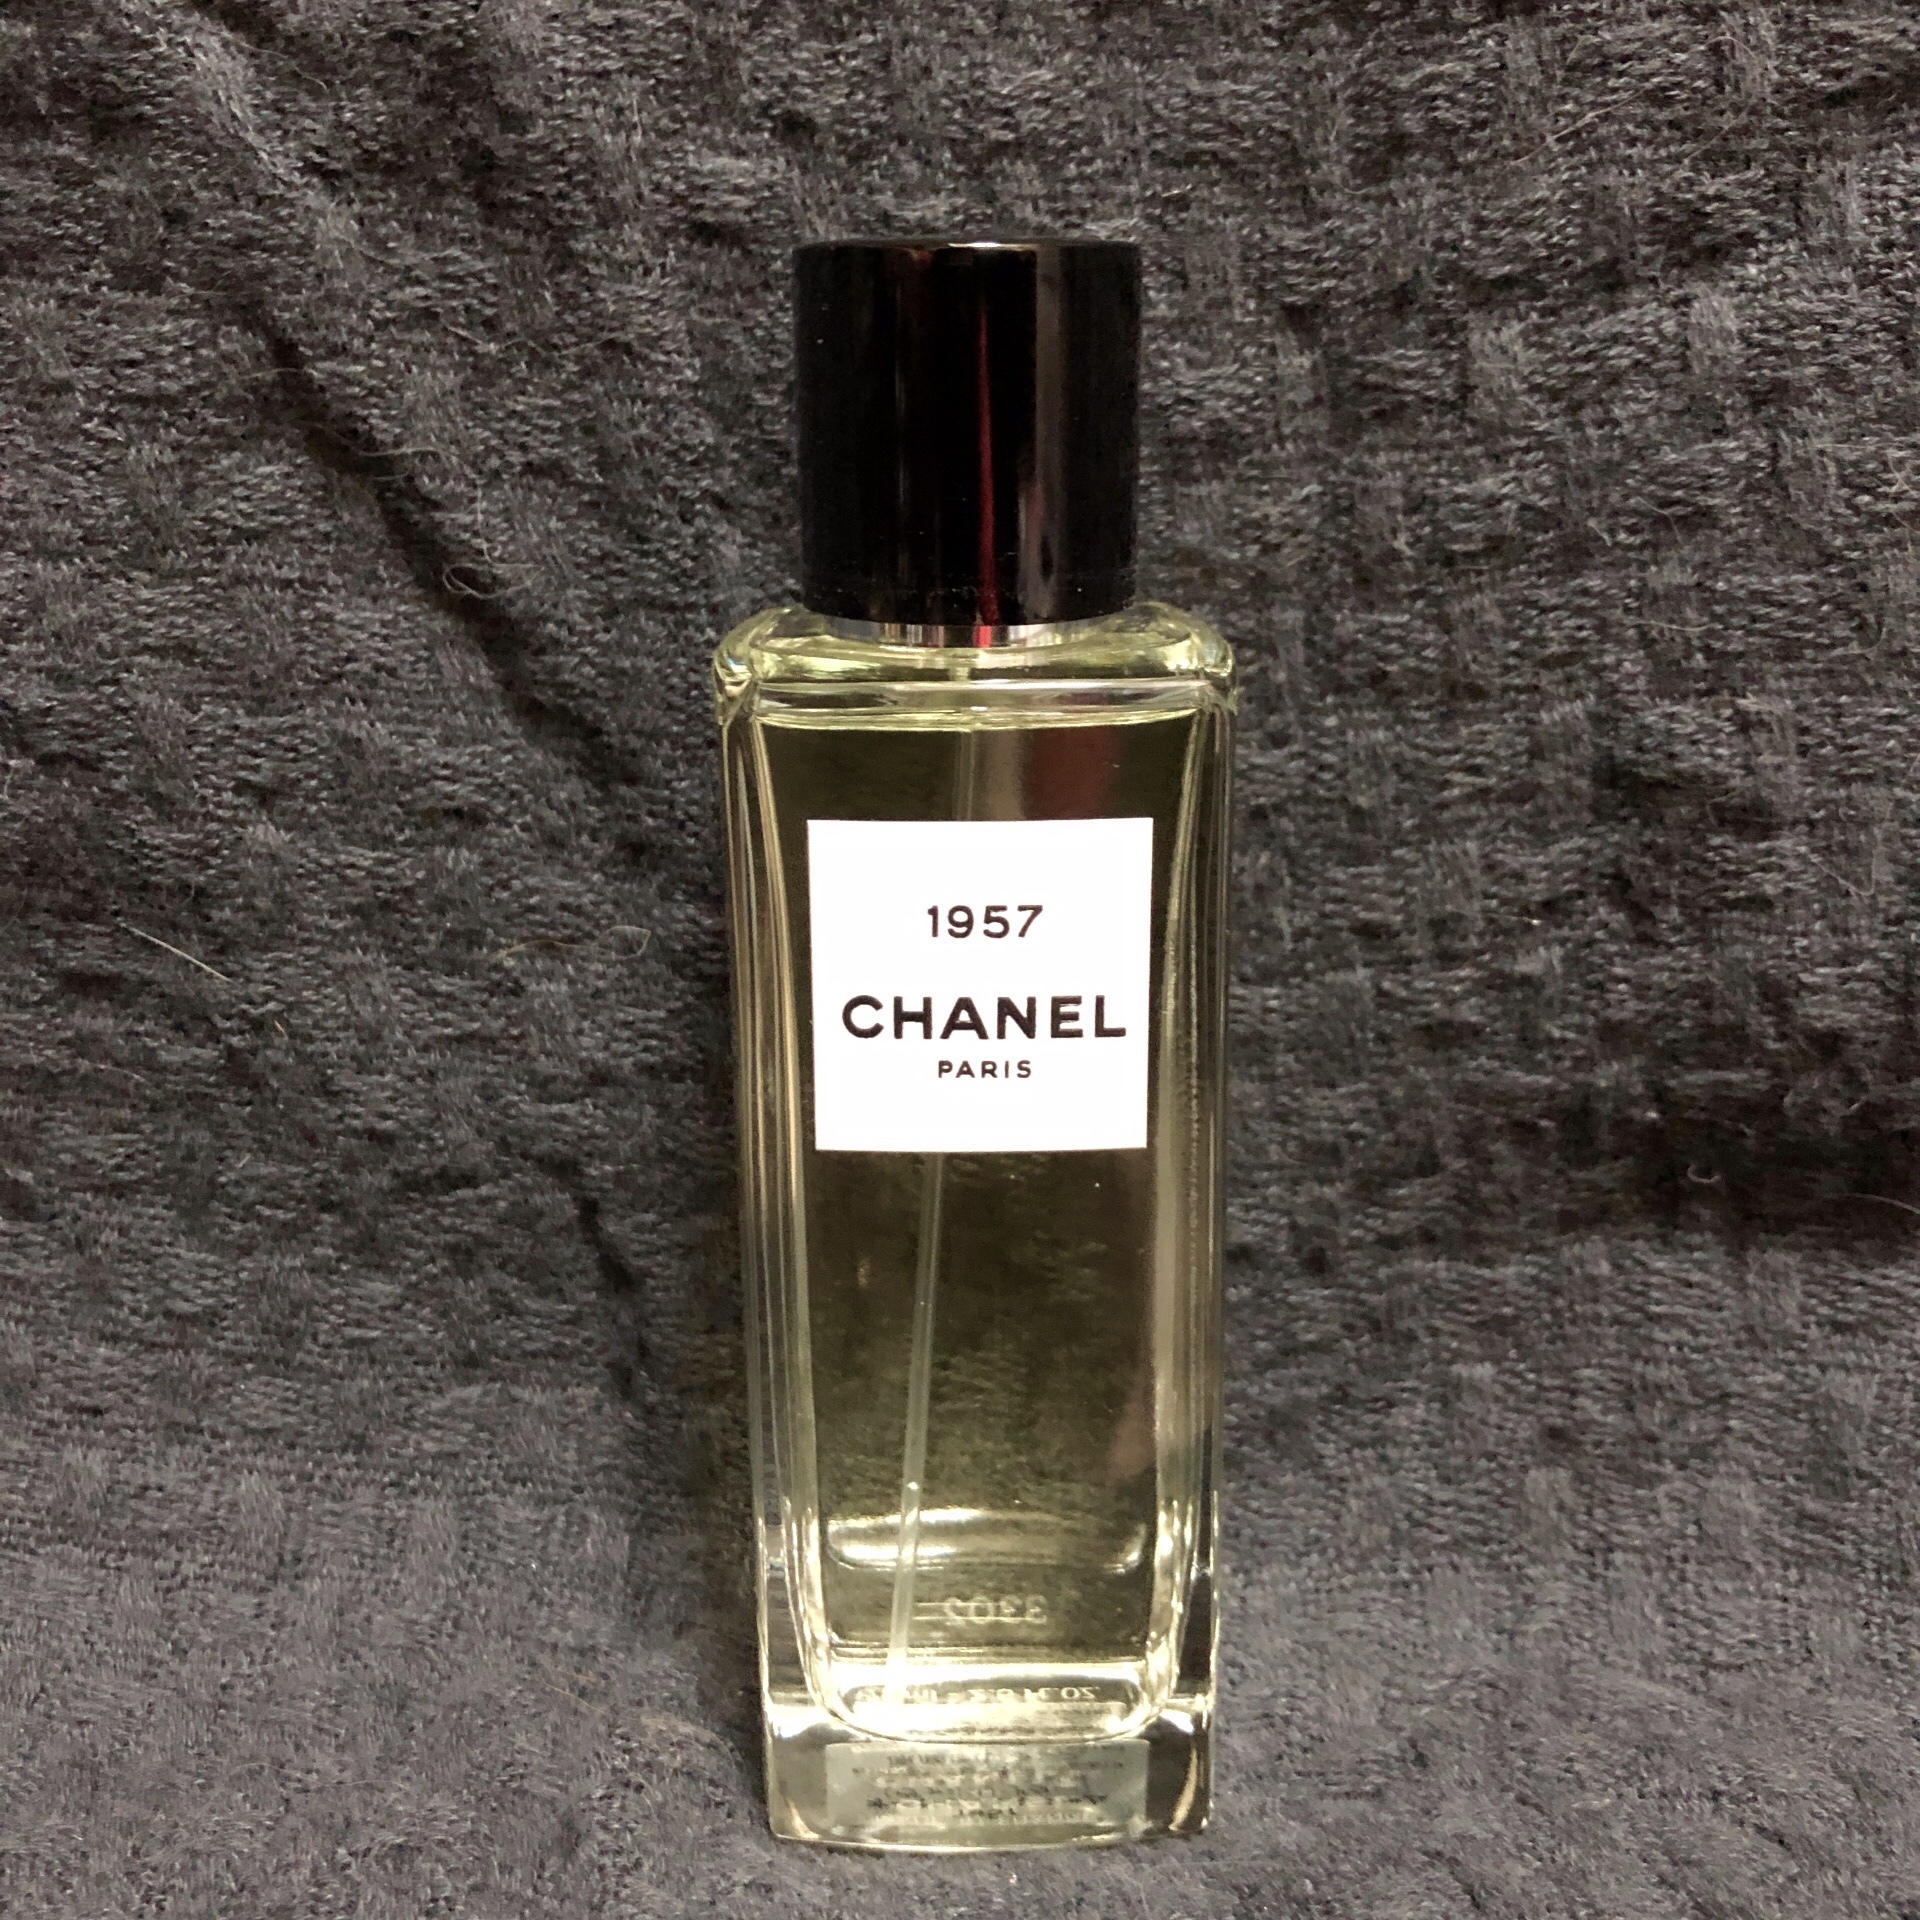 今年の新作から定番まで！ 【CHANEL】1957オードゥパルファム(ヴァポリザター)75ml 香水(女性用)